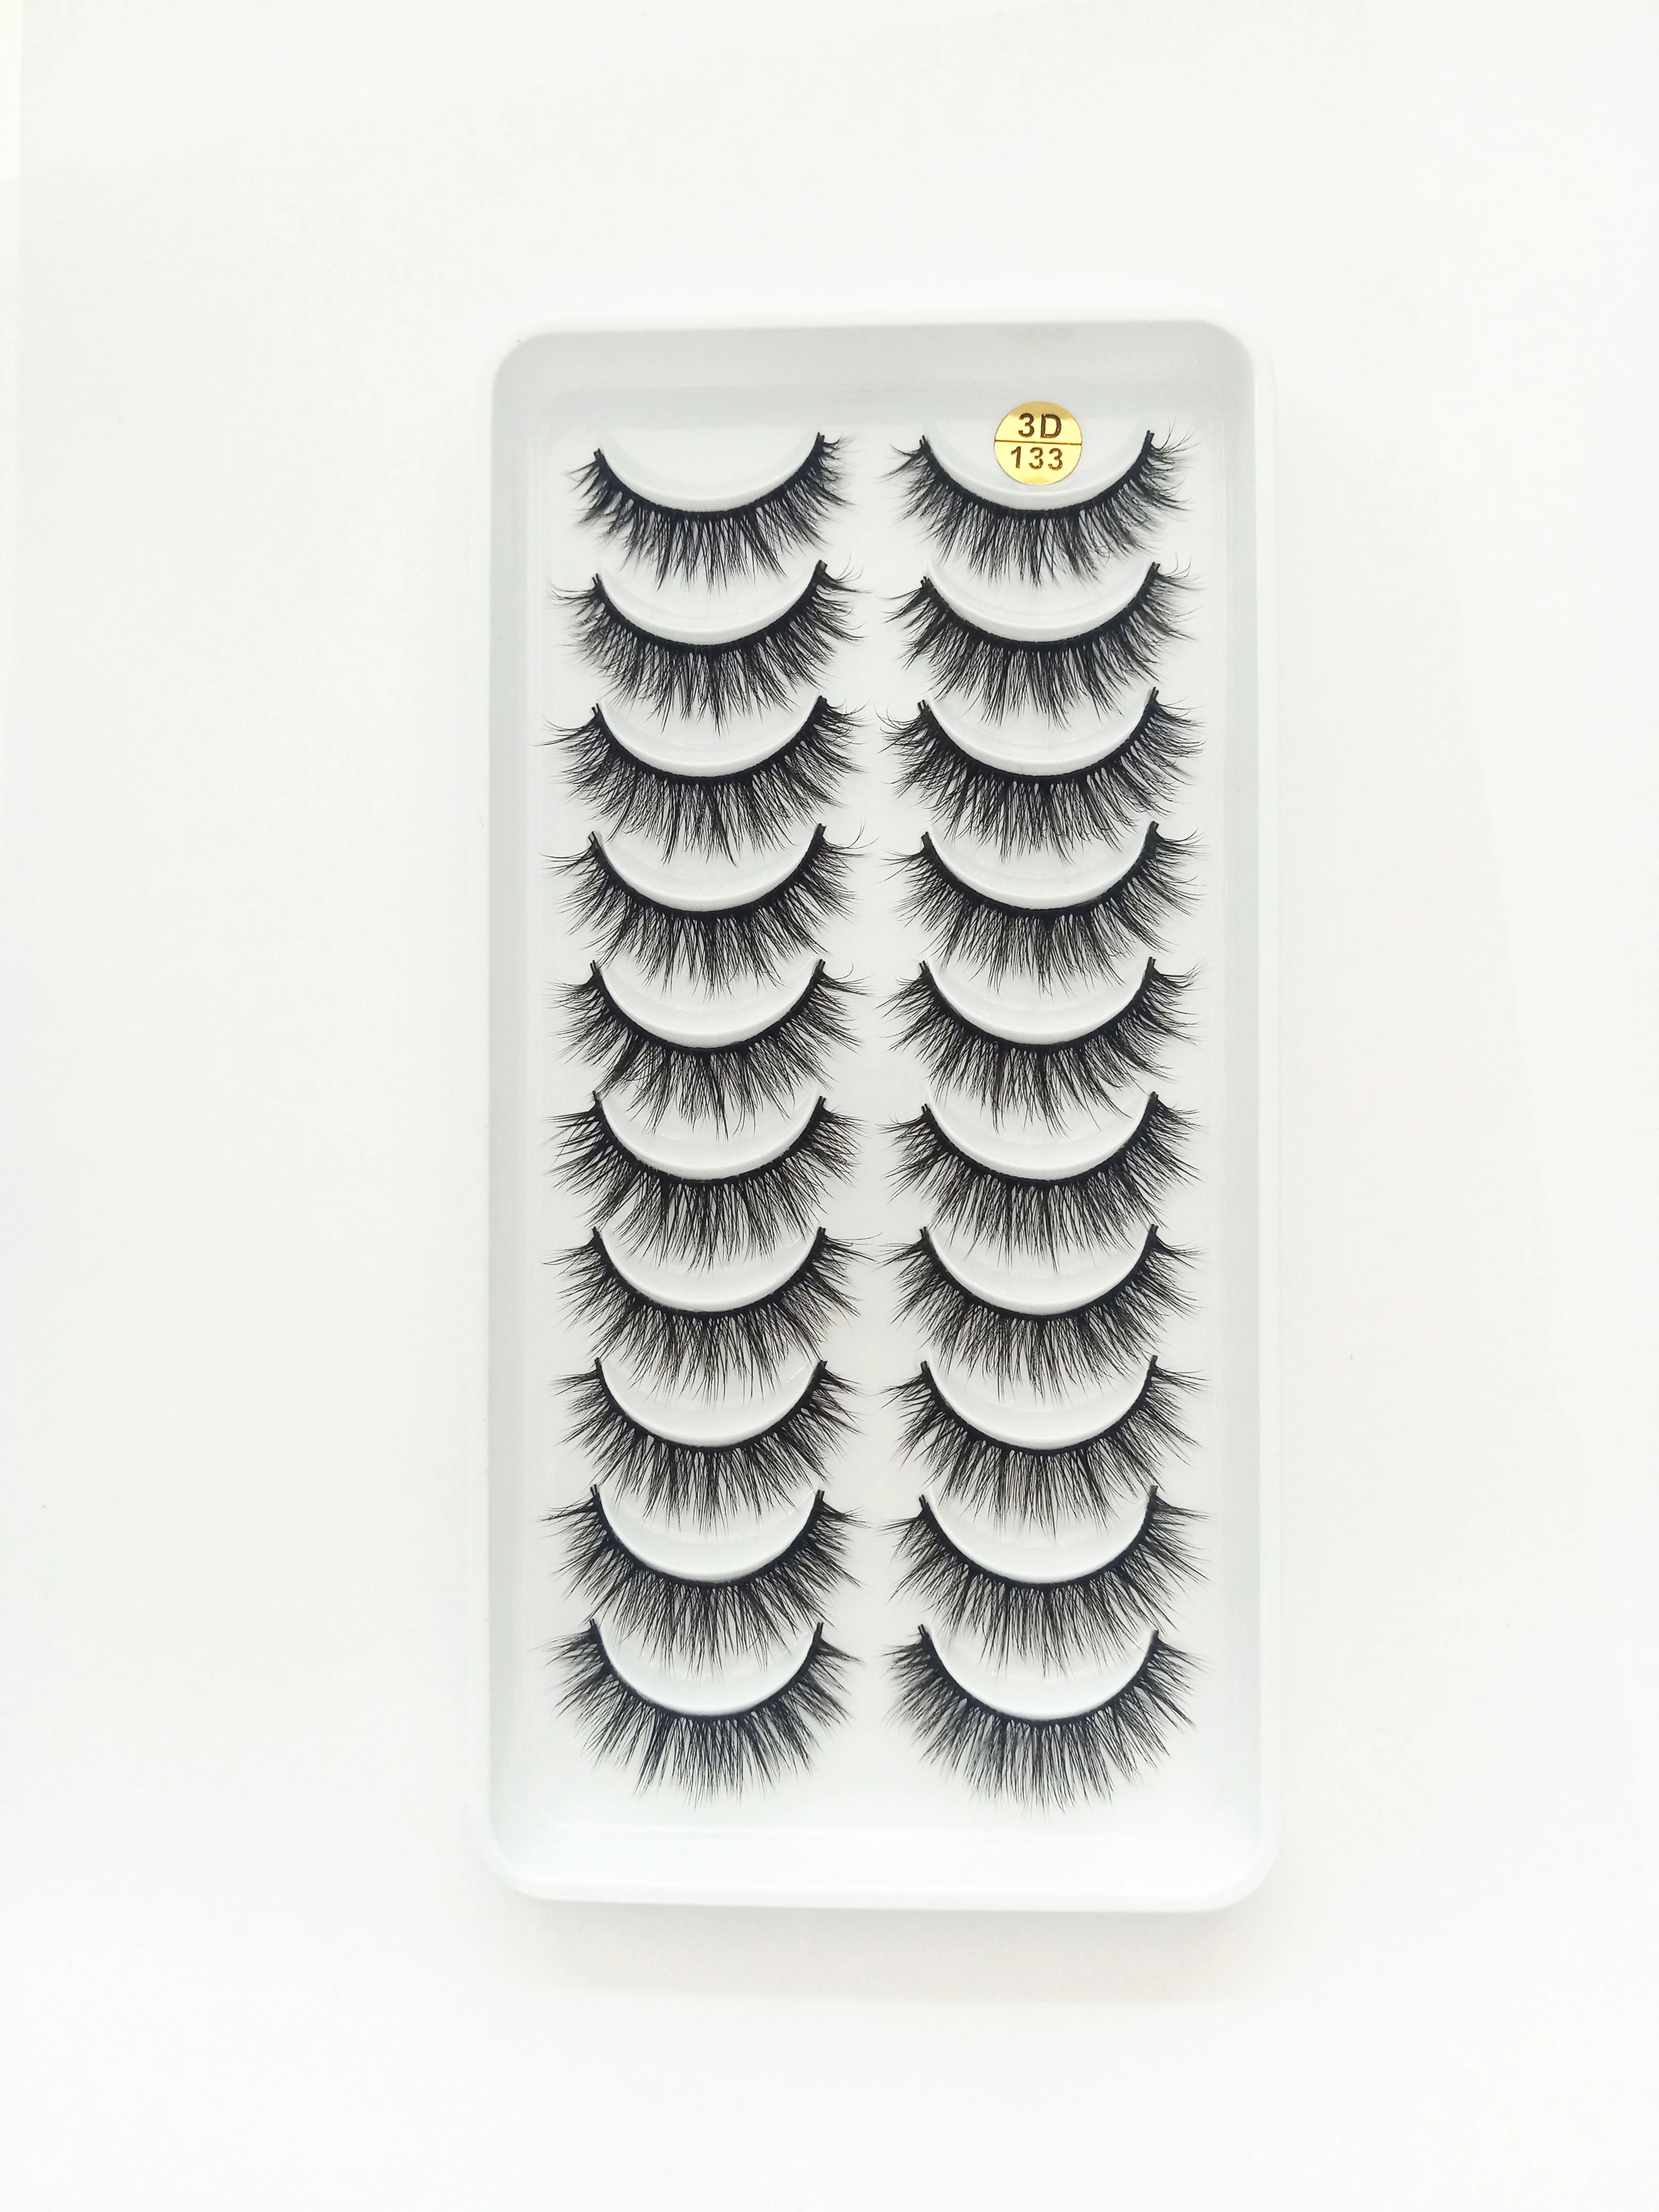 10 Pairs Natural False Eyelashes Long Makeup 3d Mink Lashes Extension Eyelash for Beauty 54